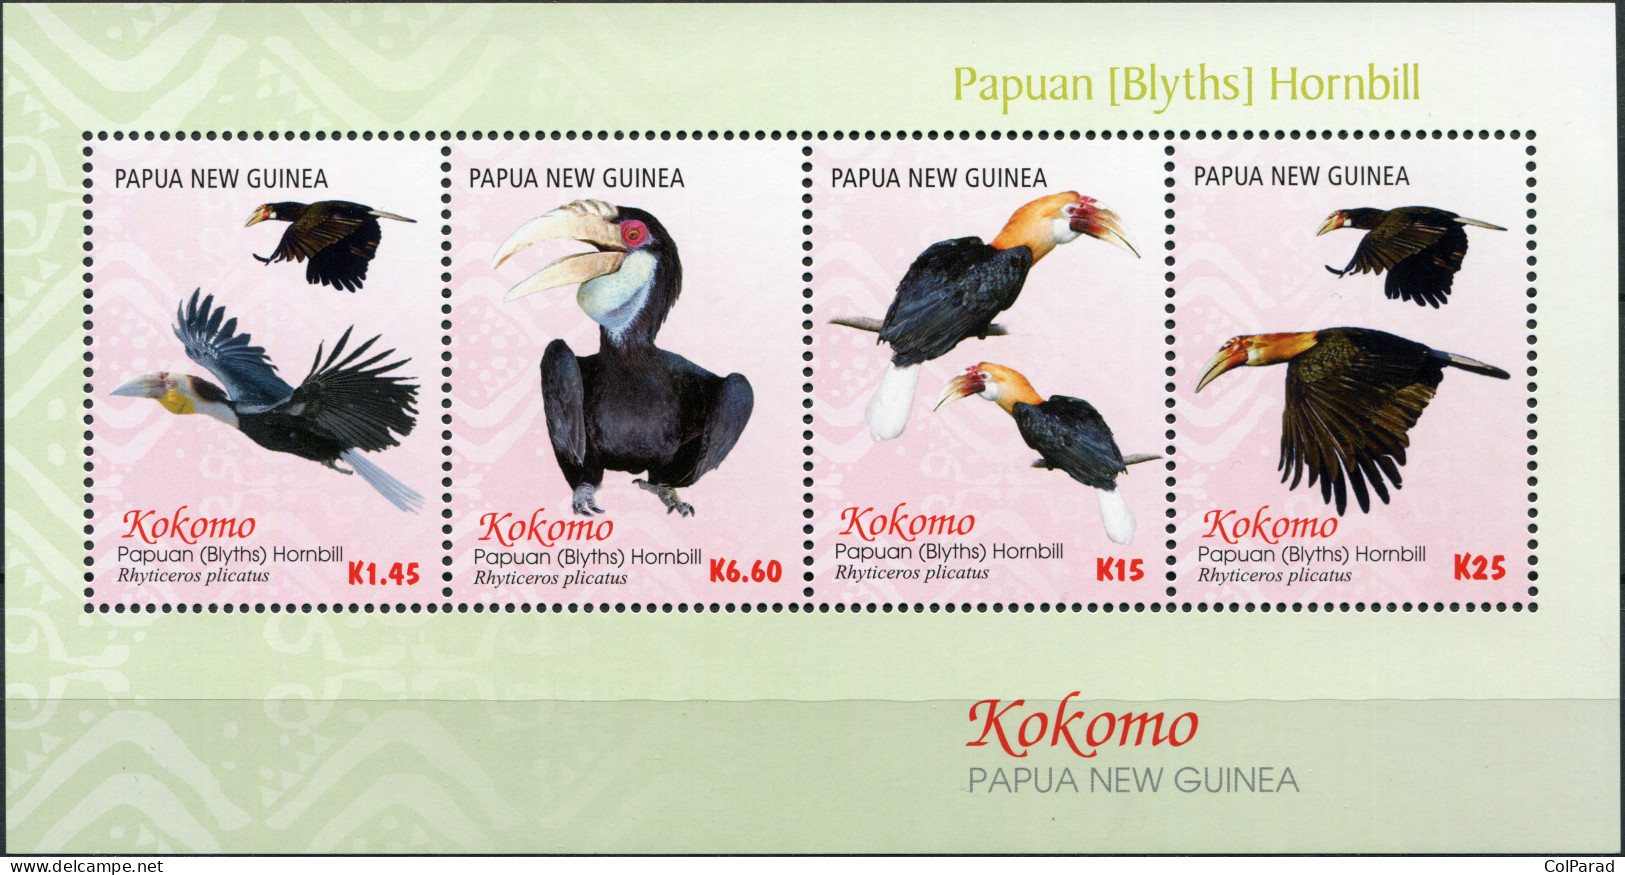 PAPUA NEW GUINEA - 2016 - MINIATURE SHEET MNH ** - Kokomo - Papuan Hornbill - Papoea-Nieuw-Guinea